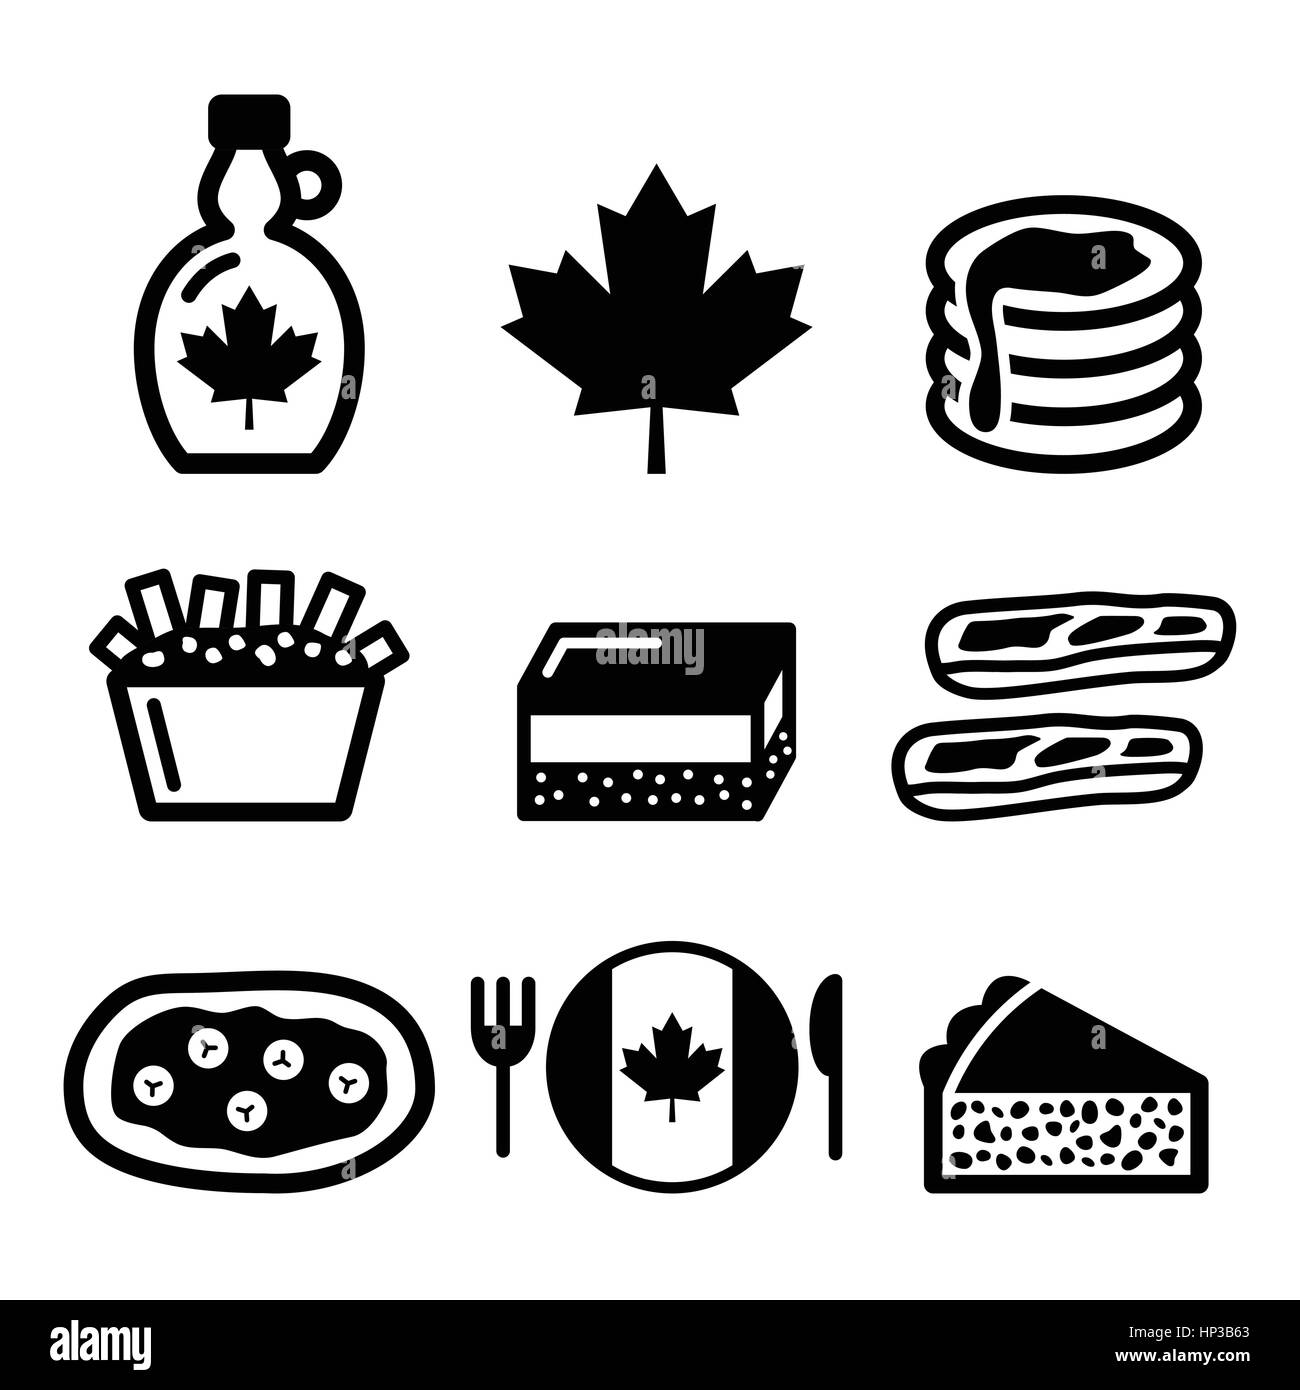 Kanadische Essen Icons - Poutine, Nanaimo Bar, Biber Geschichte, Ahornsirup, Tourtière. Vektor-Icons set - traditionelle Speisen und Gerichte von Cana Stock Vektor